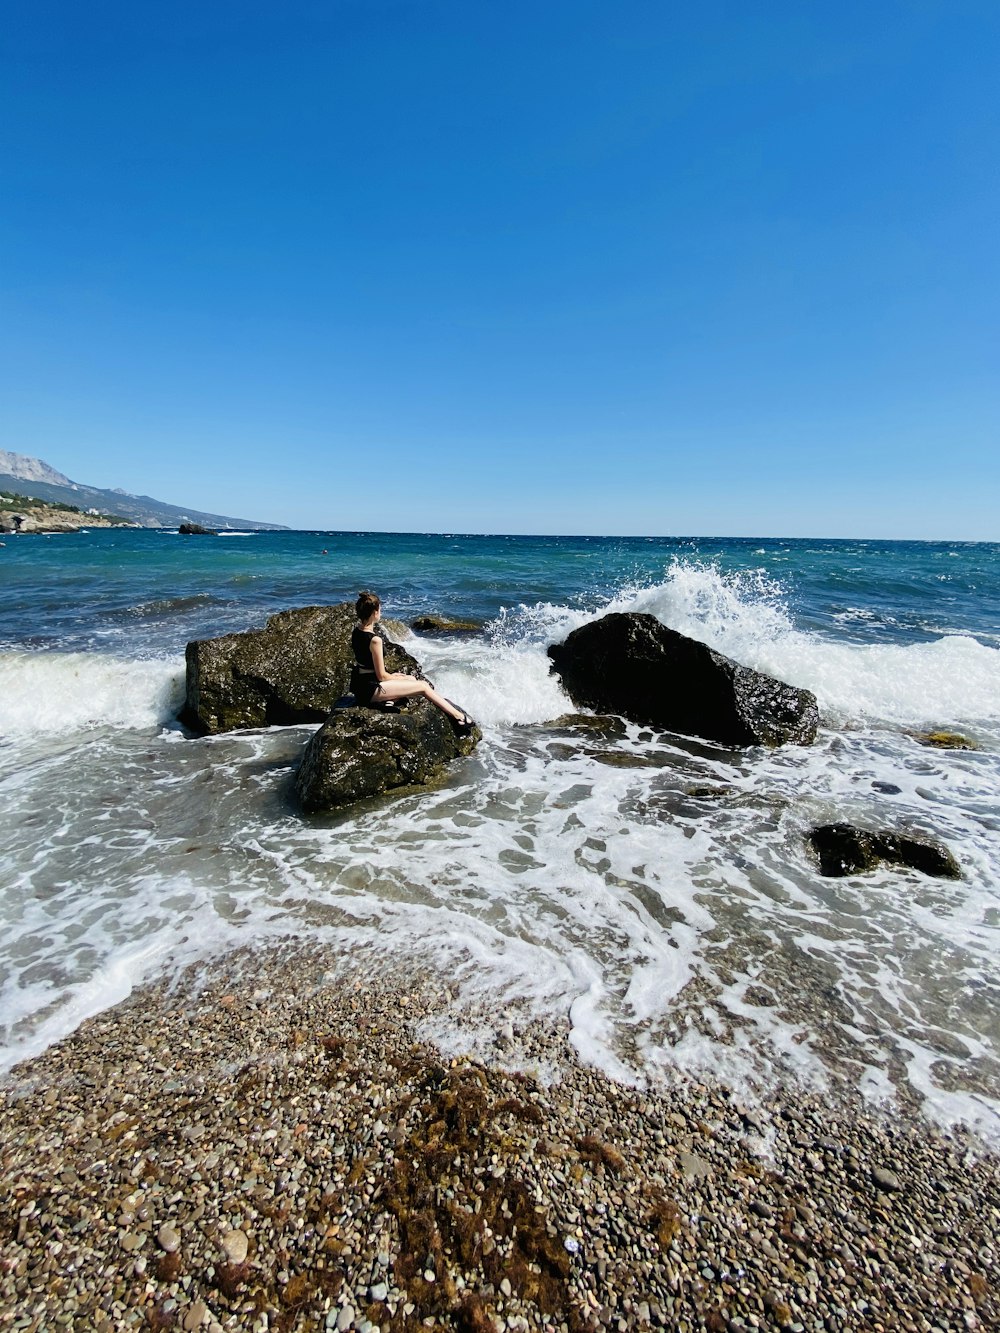 Frau in schwarzem Kleid, die tagsüber auf einer Felsformation auf See sitzt